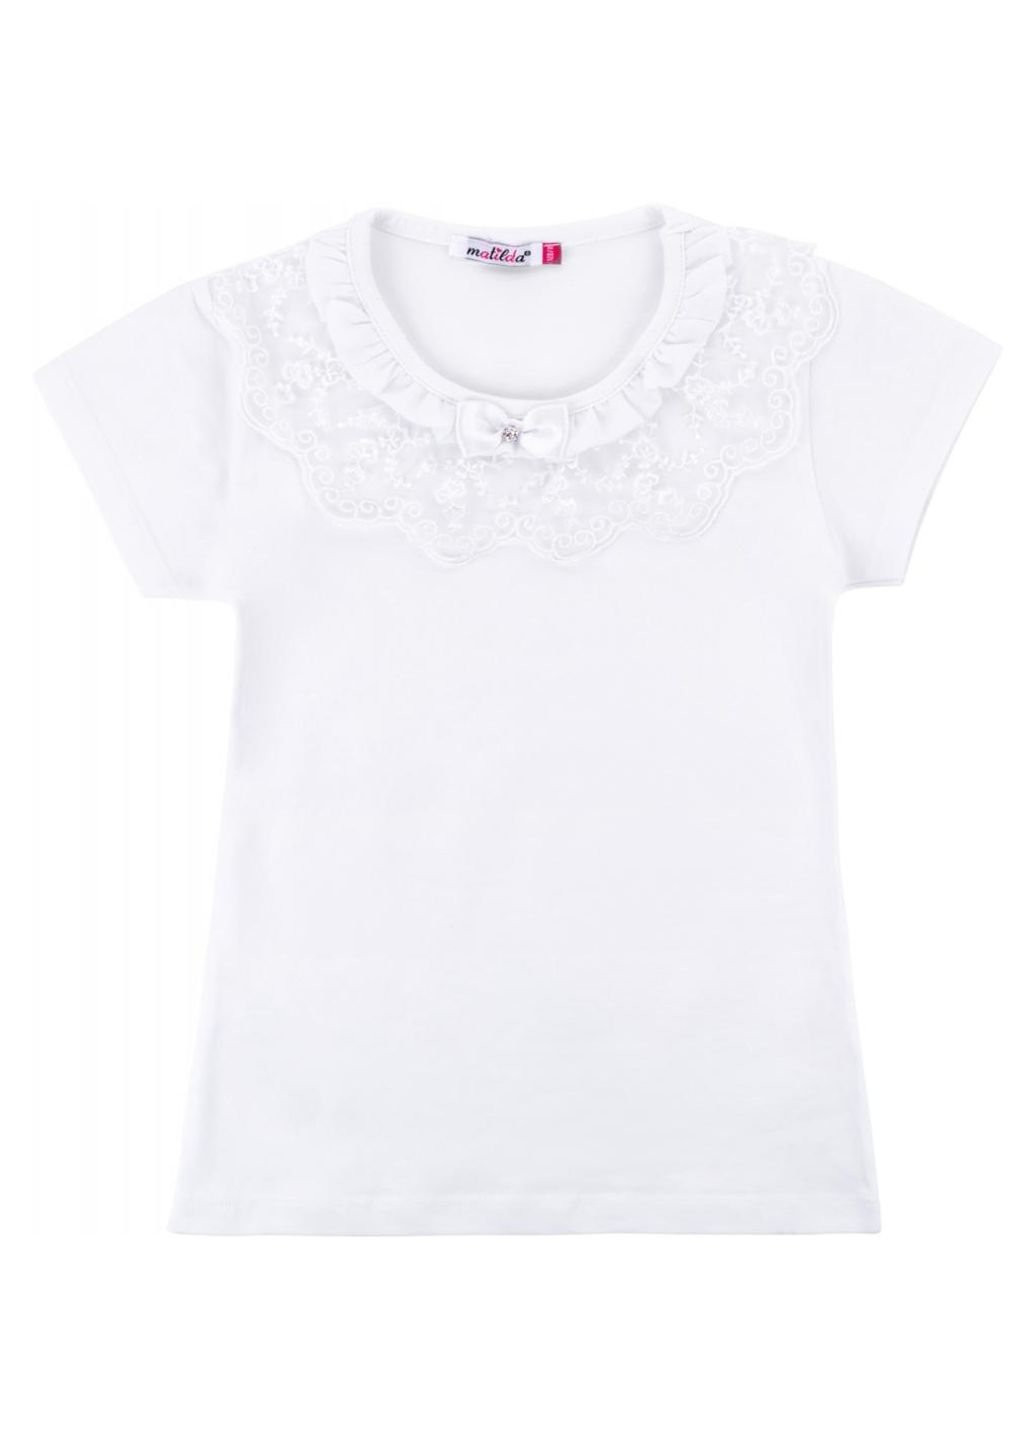 Біла демісезонна футболка дитяча з коротким рукавом та мереживним оборкою (7134-164g-white) Matilda